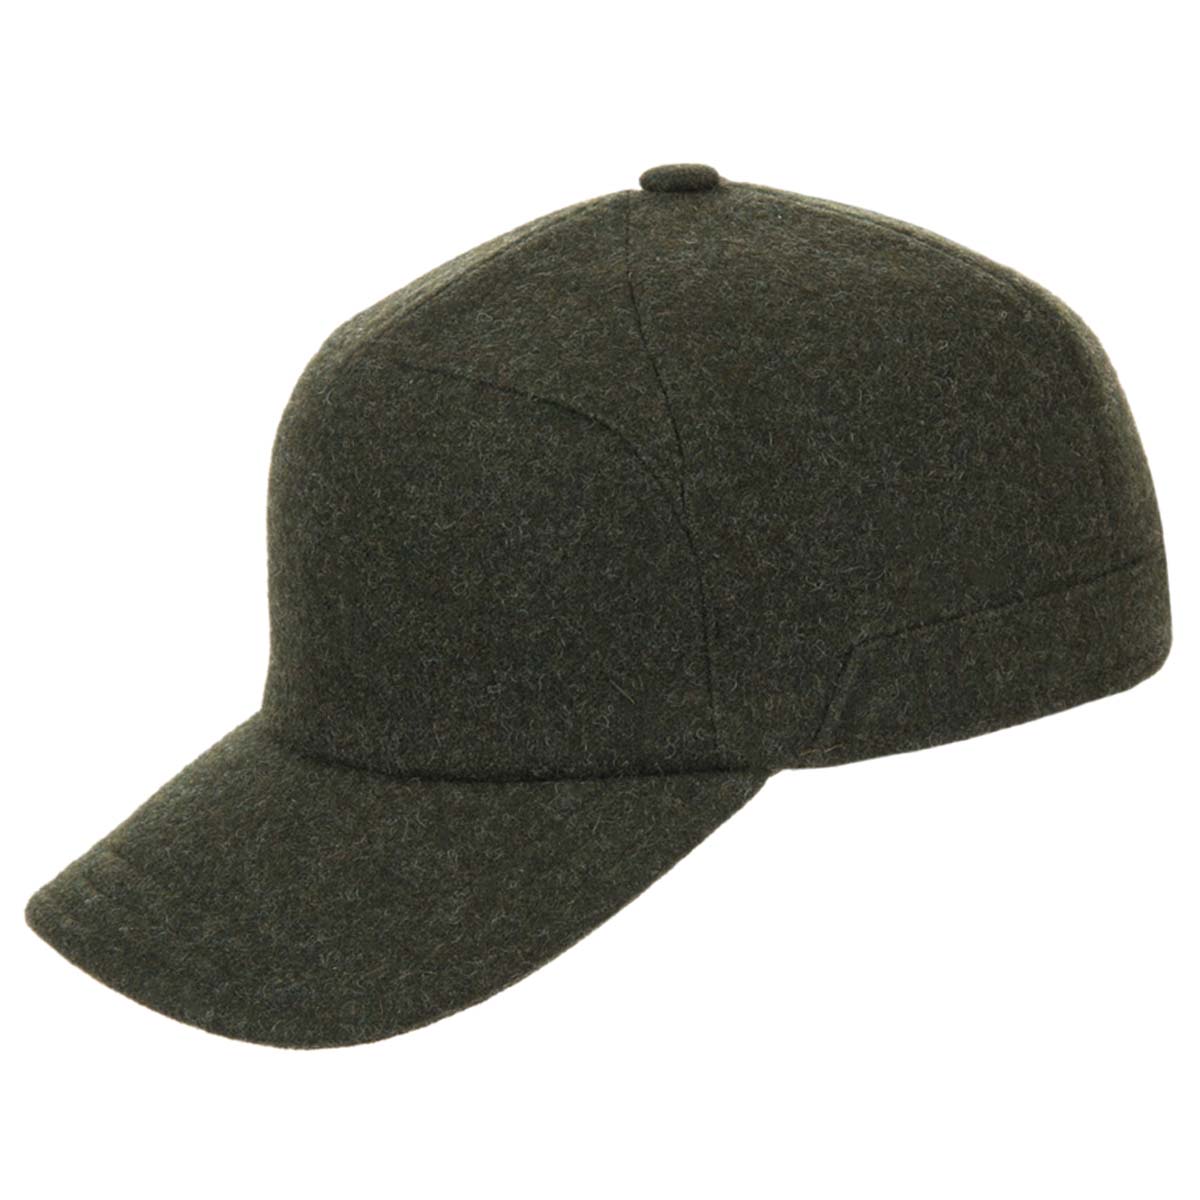 Antonio peaked cap integrated earflaps --> Online Hatshop for hats ...